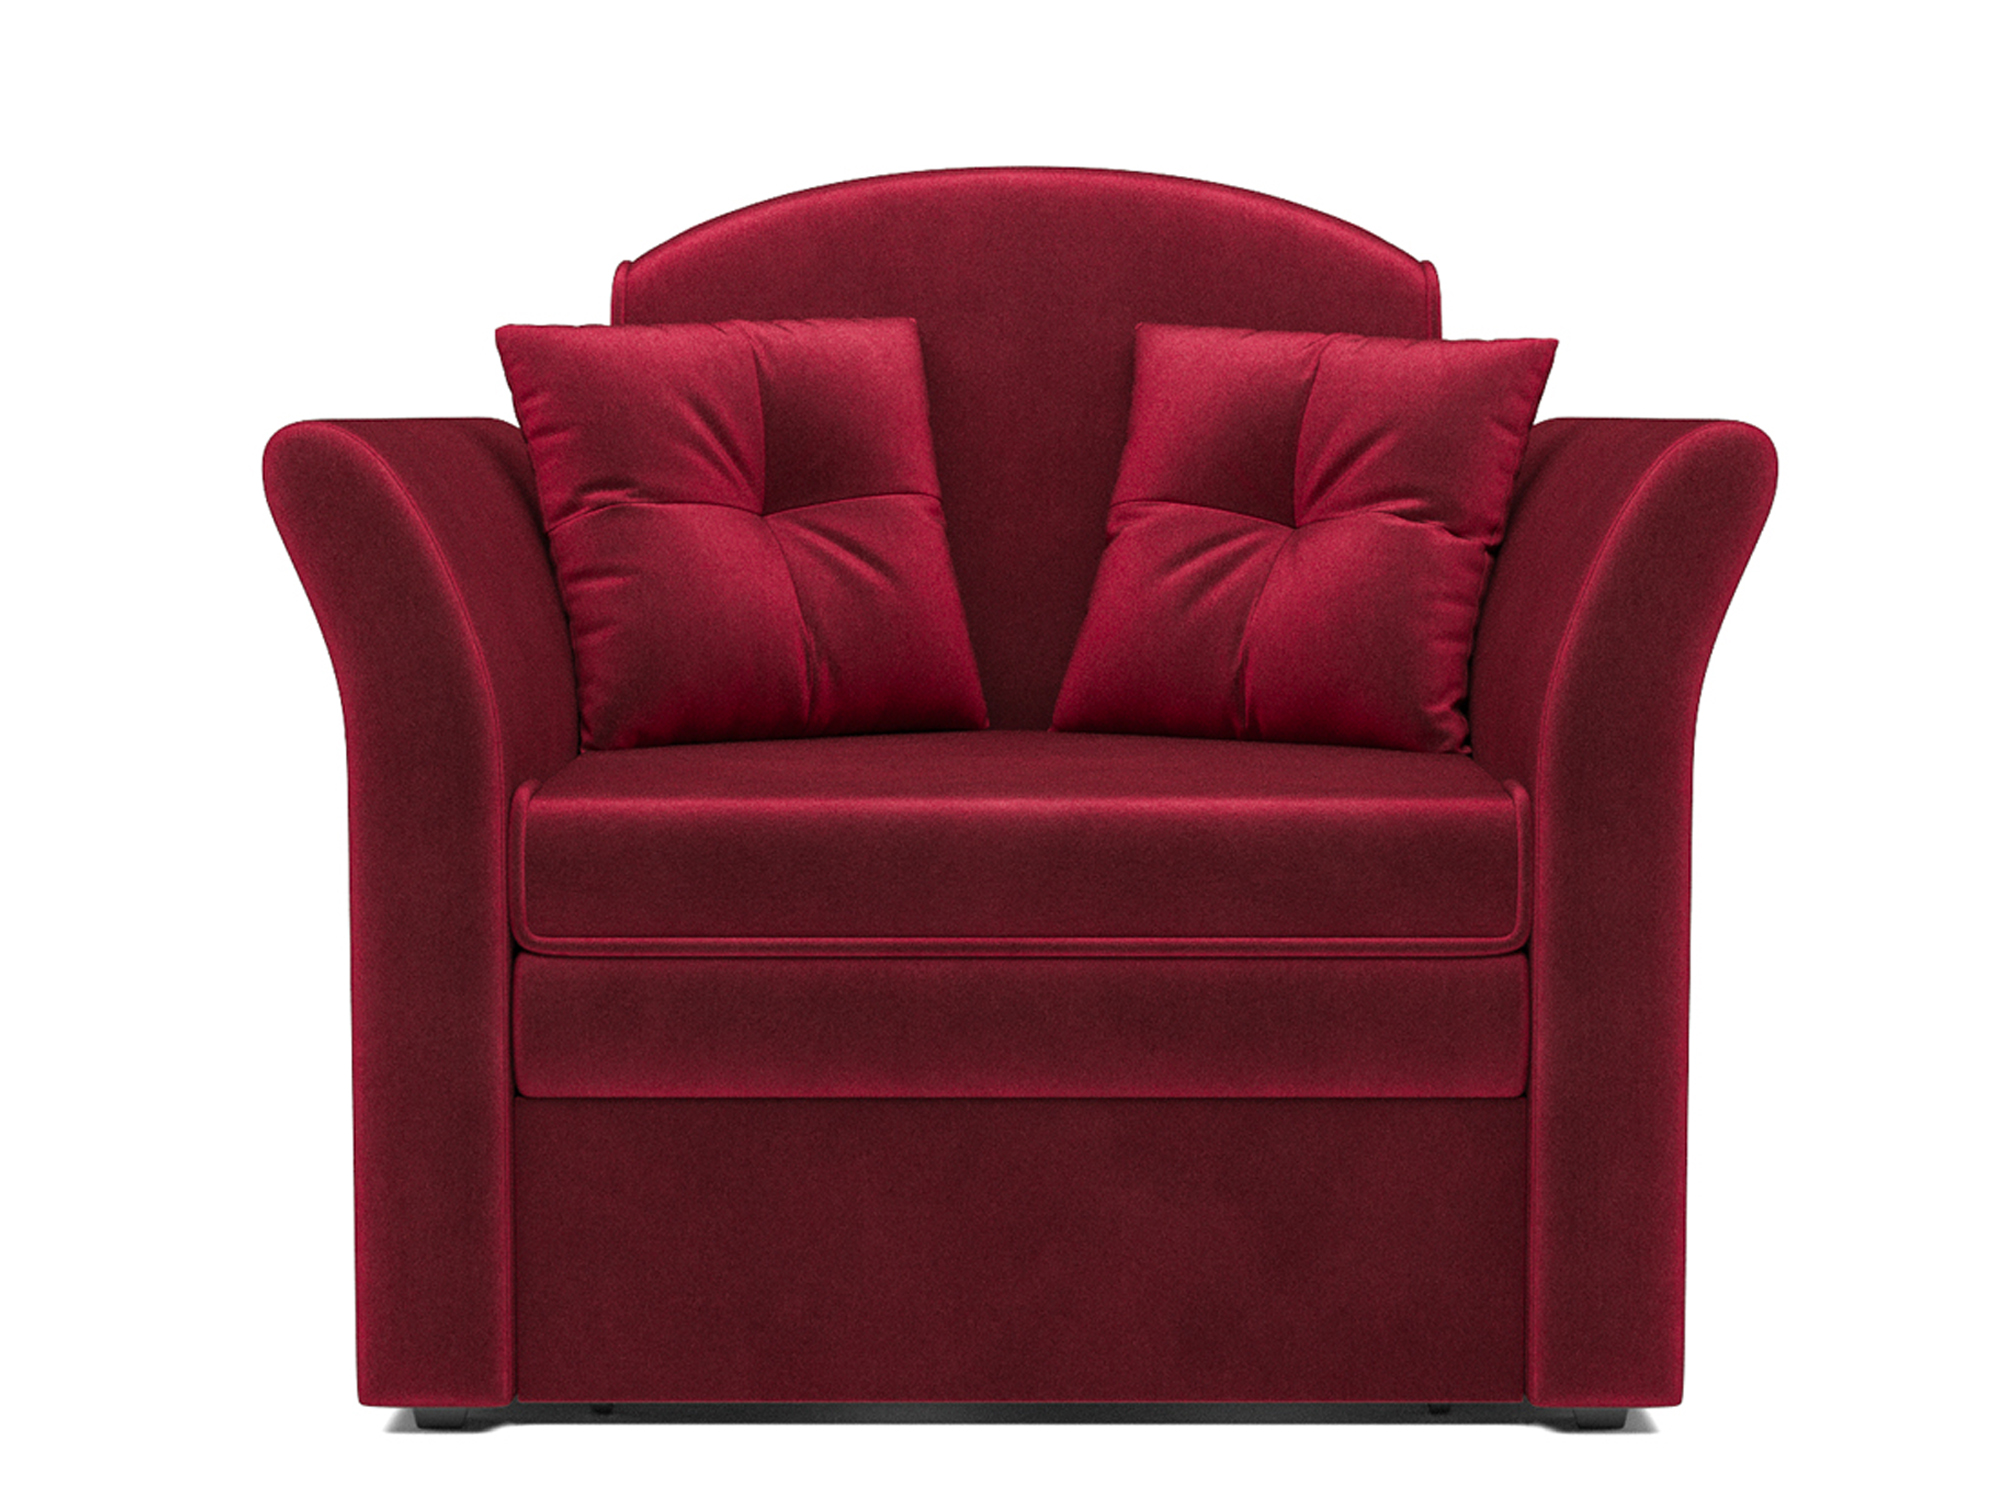 Кресло-кровать Малютка 2 MebelVia Красный, Вельвет бархатного типа, ДСП, Брус сосны, Фанера диван выкатной малютка 2 mebelvia красный вельвет бархатного типа дсп брус сосны фанера